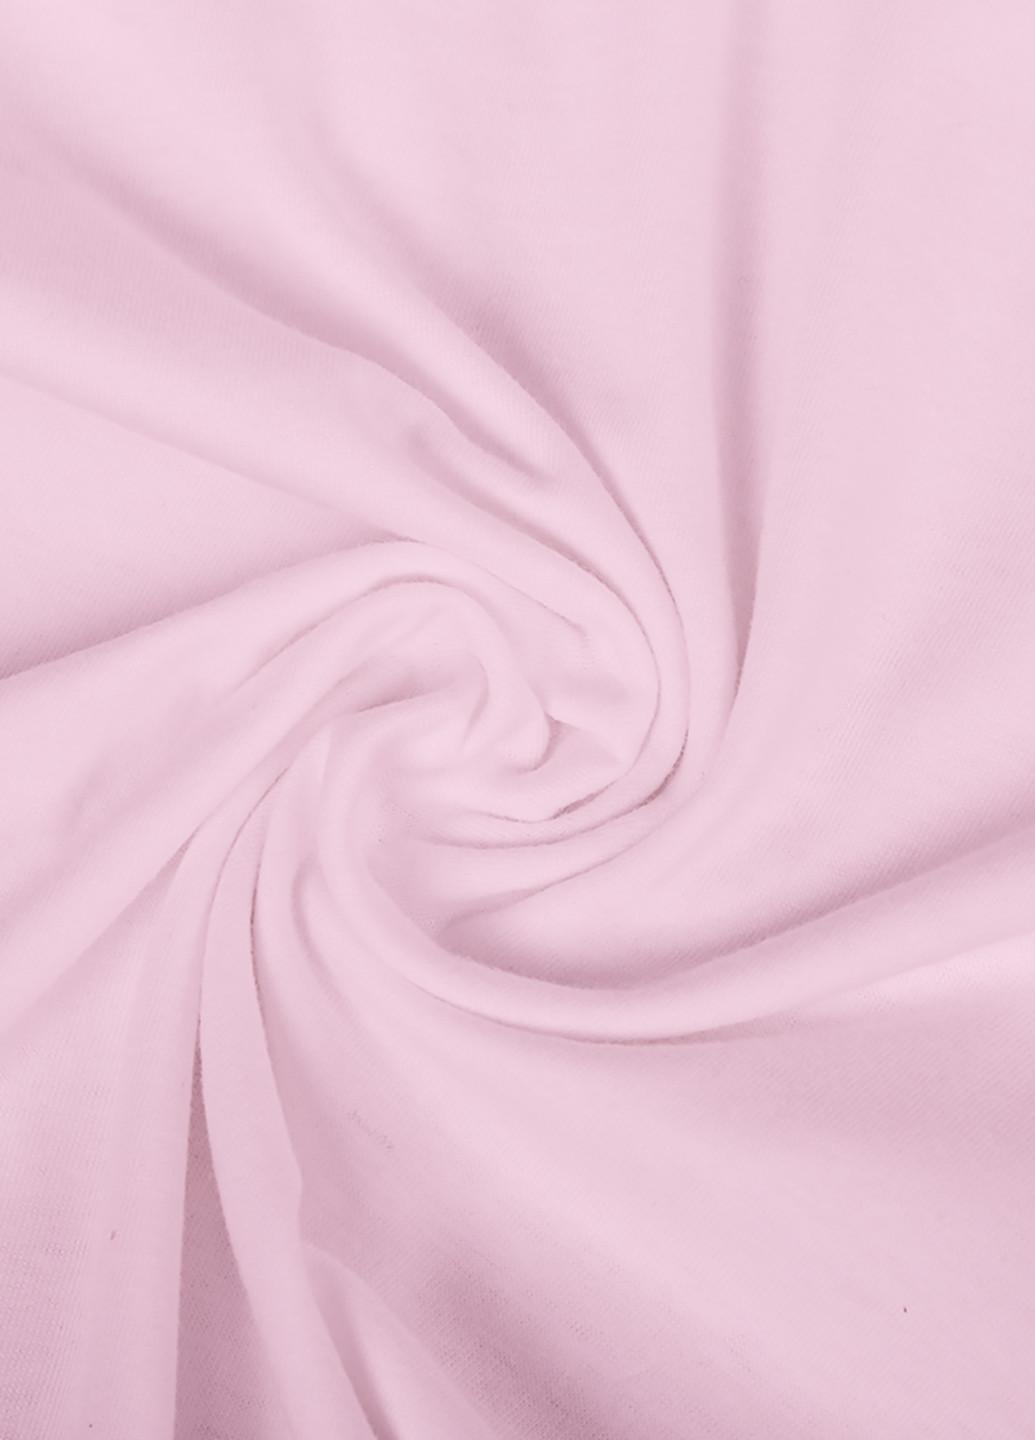 Розовая демисезонная футболка детская пубг пабг (pubg)(9224-1187) MobiPrint